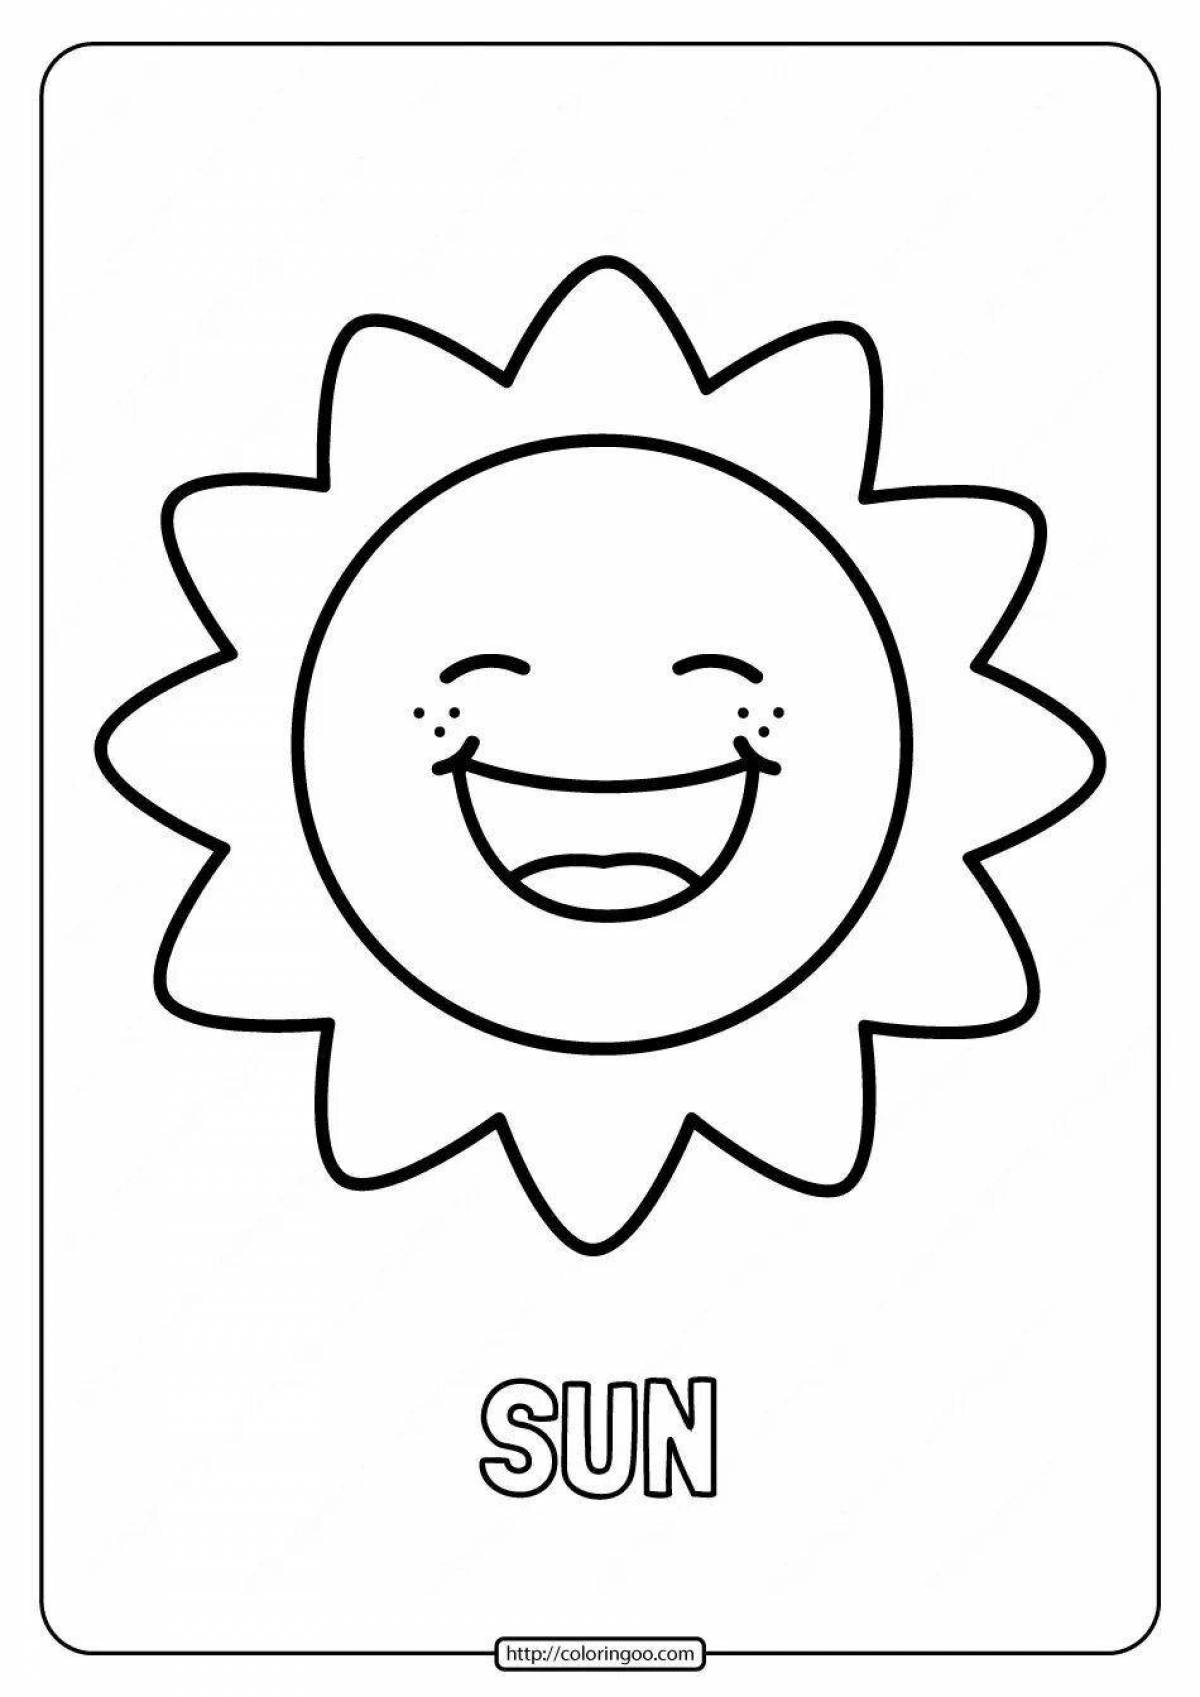 Игривая раскраска солнце для детей 4-5 лет